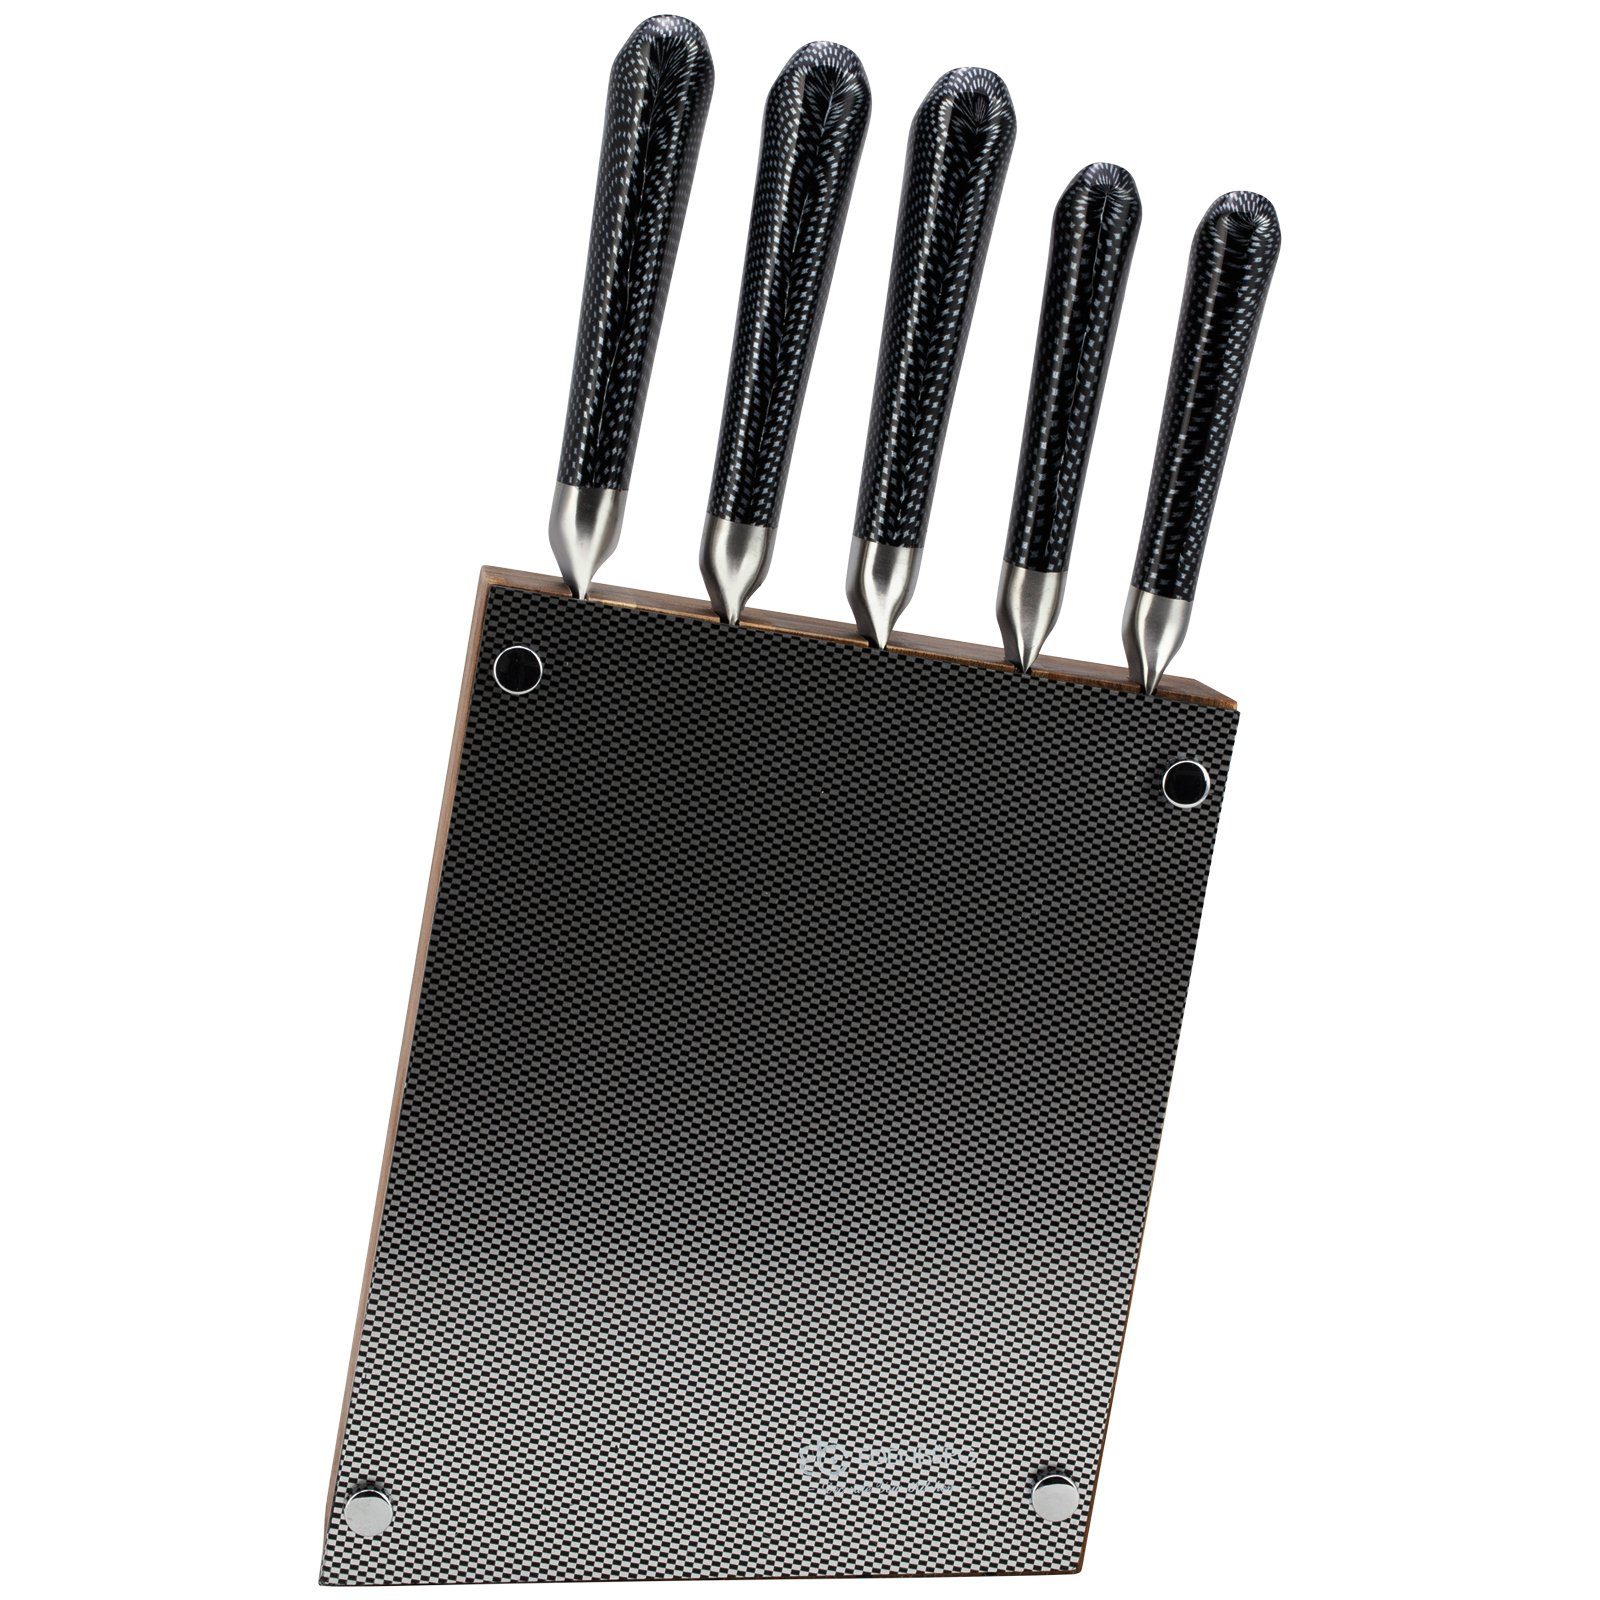 Schälmesser Chefmesser Brotmesser Messer Filetiermesser Halter (Set), Messer-Set Universalmesser Messerständer-Set Ständer Messerblock 6tlg. Block